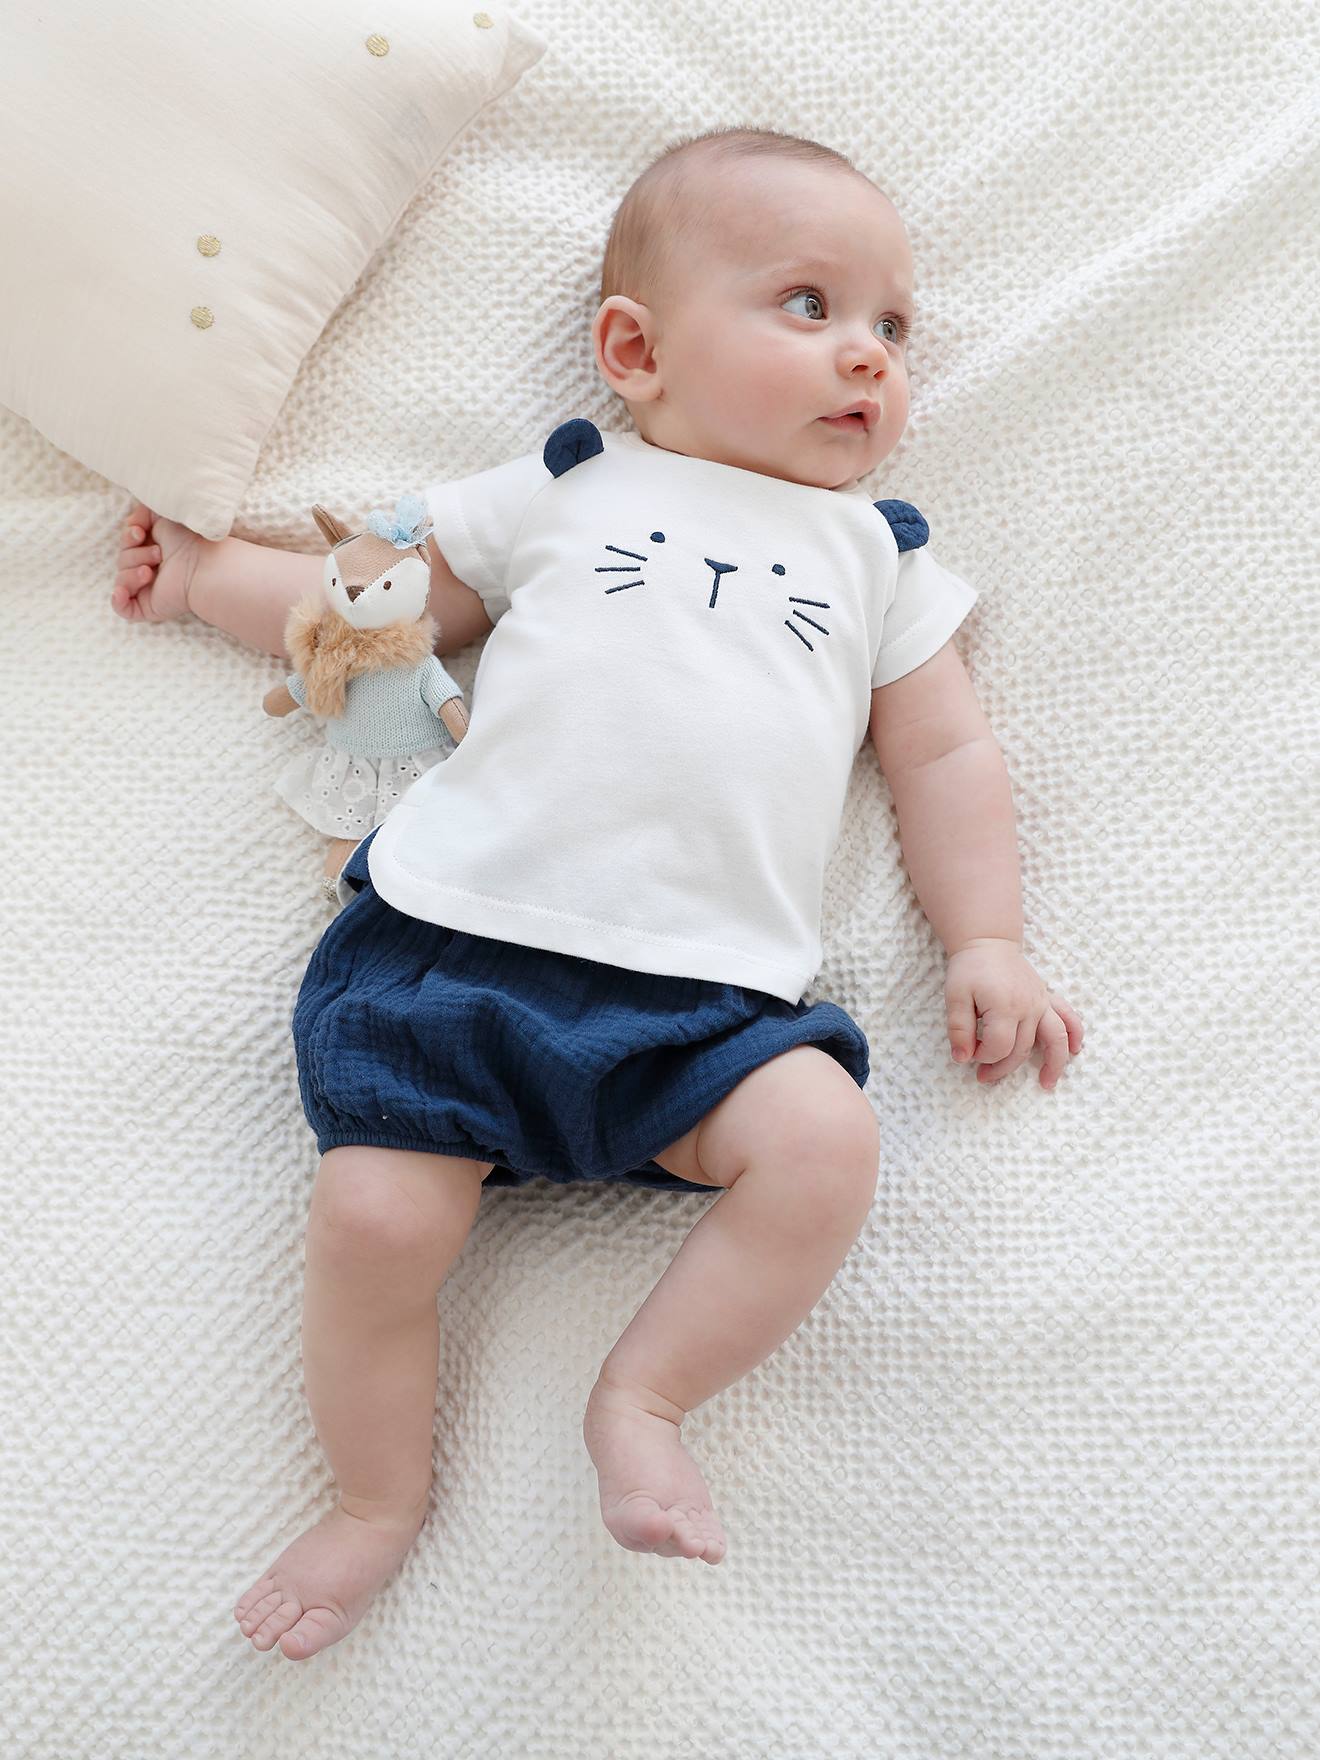 sunnymi 0-18 Monate Baby Jungen Mädchen Cartoon Tier Baumwolle Strampler Overall Kleidung 